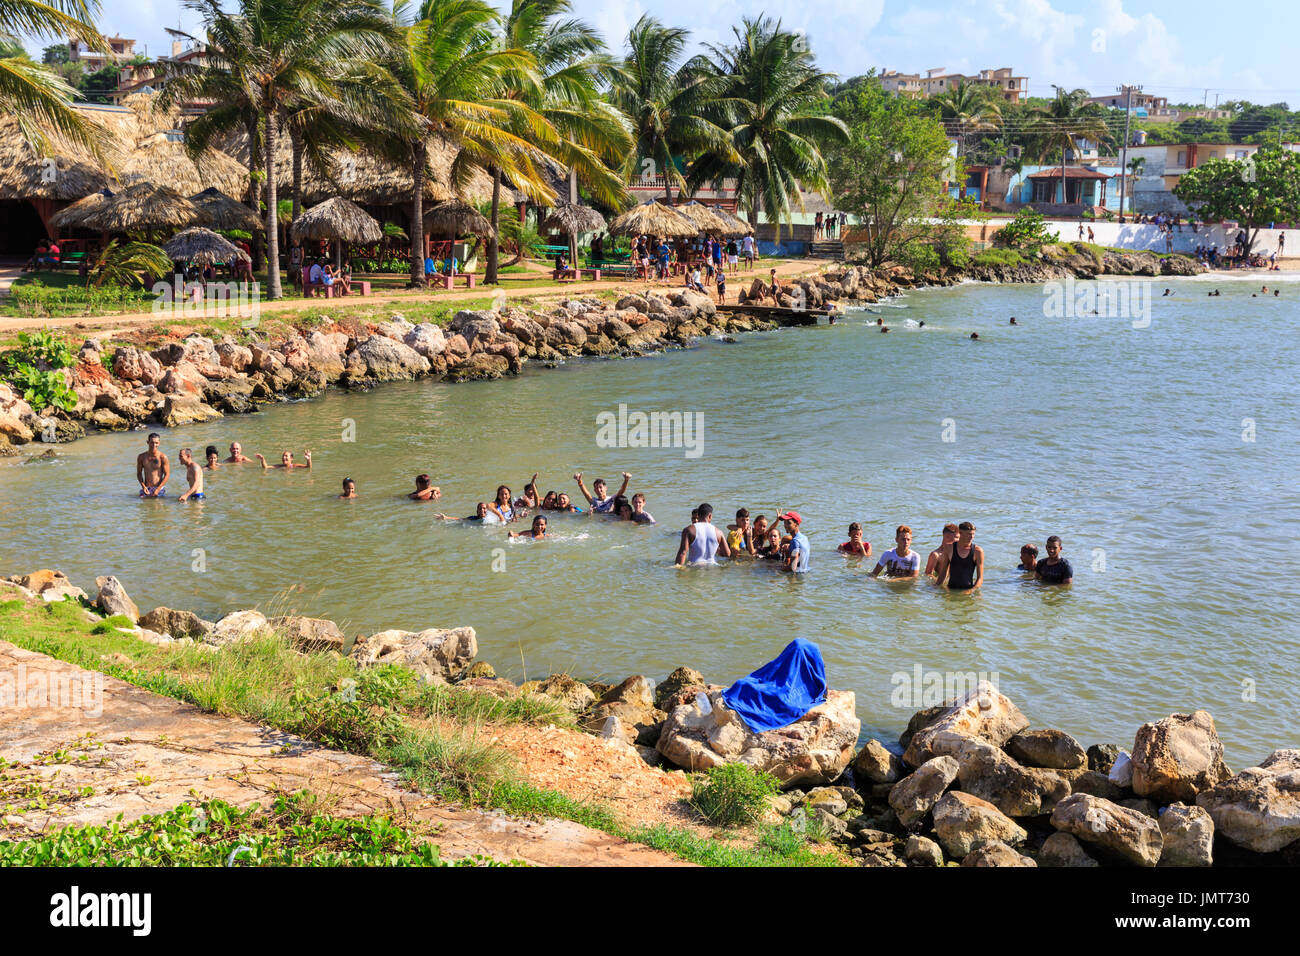 Los cubanos de bañarse, gente nadando y disfrutando de su tiempo de ocio en la playa de la ciudad de Matanzas, Cuba Foto de stock